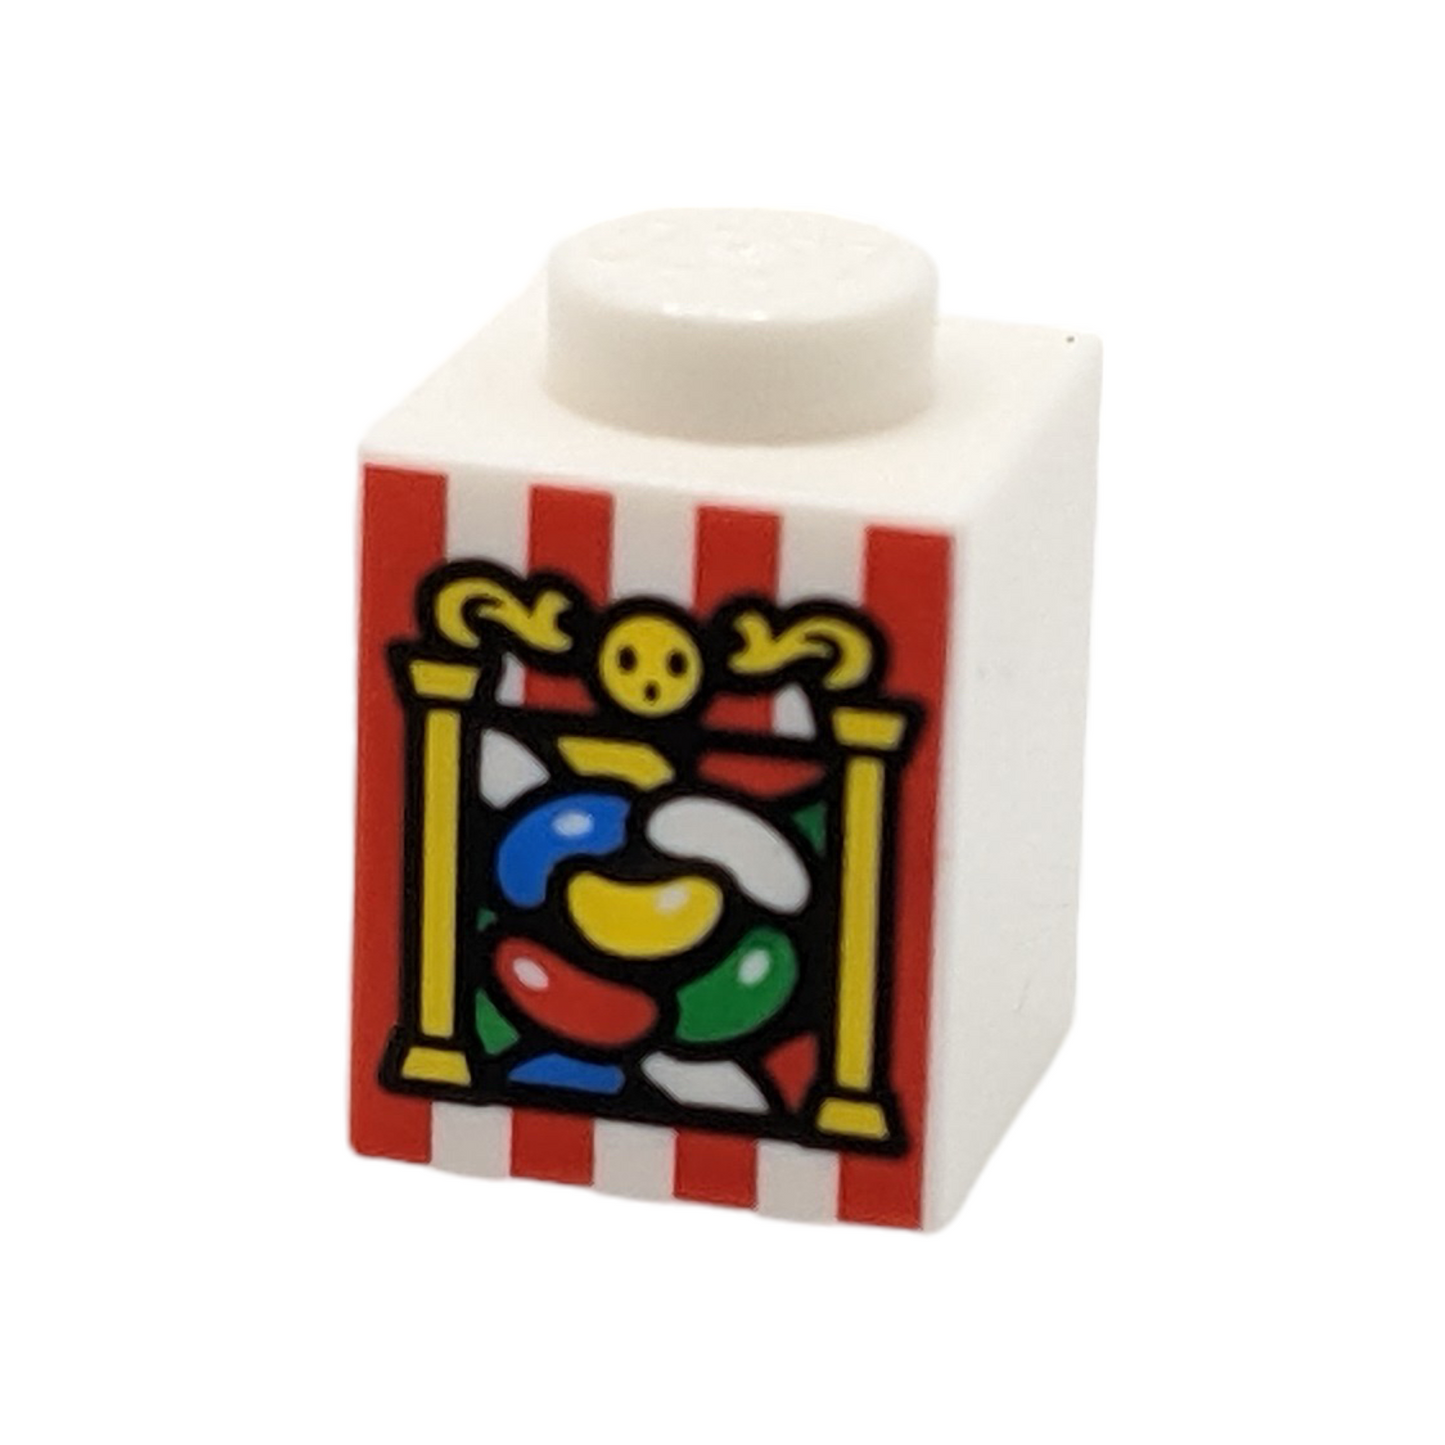 LEGO Brick 1x1 - Jelly Beans